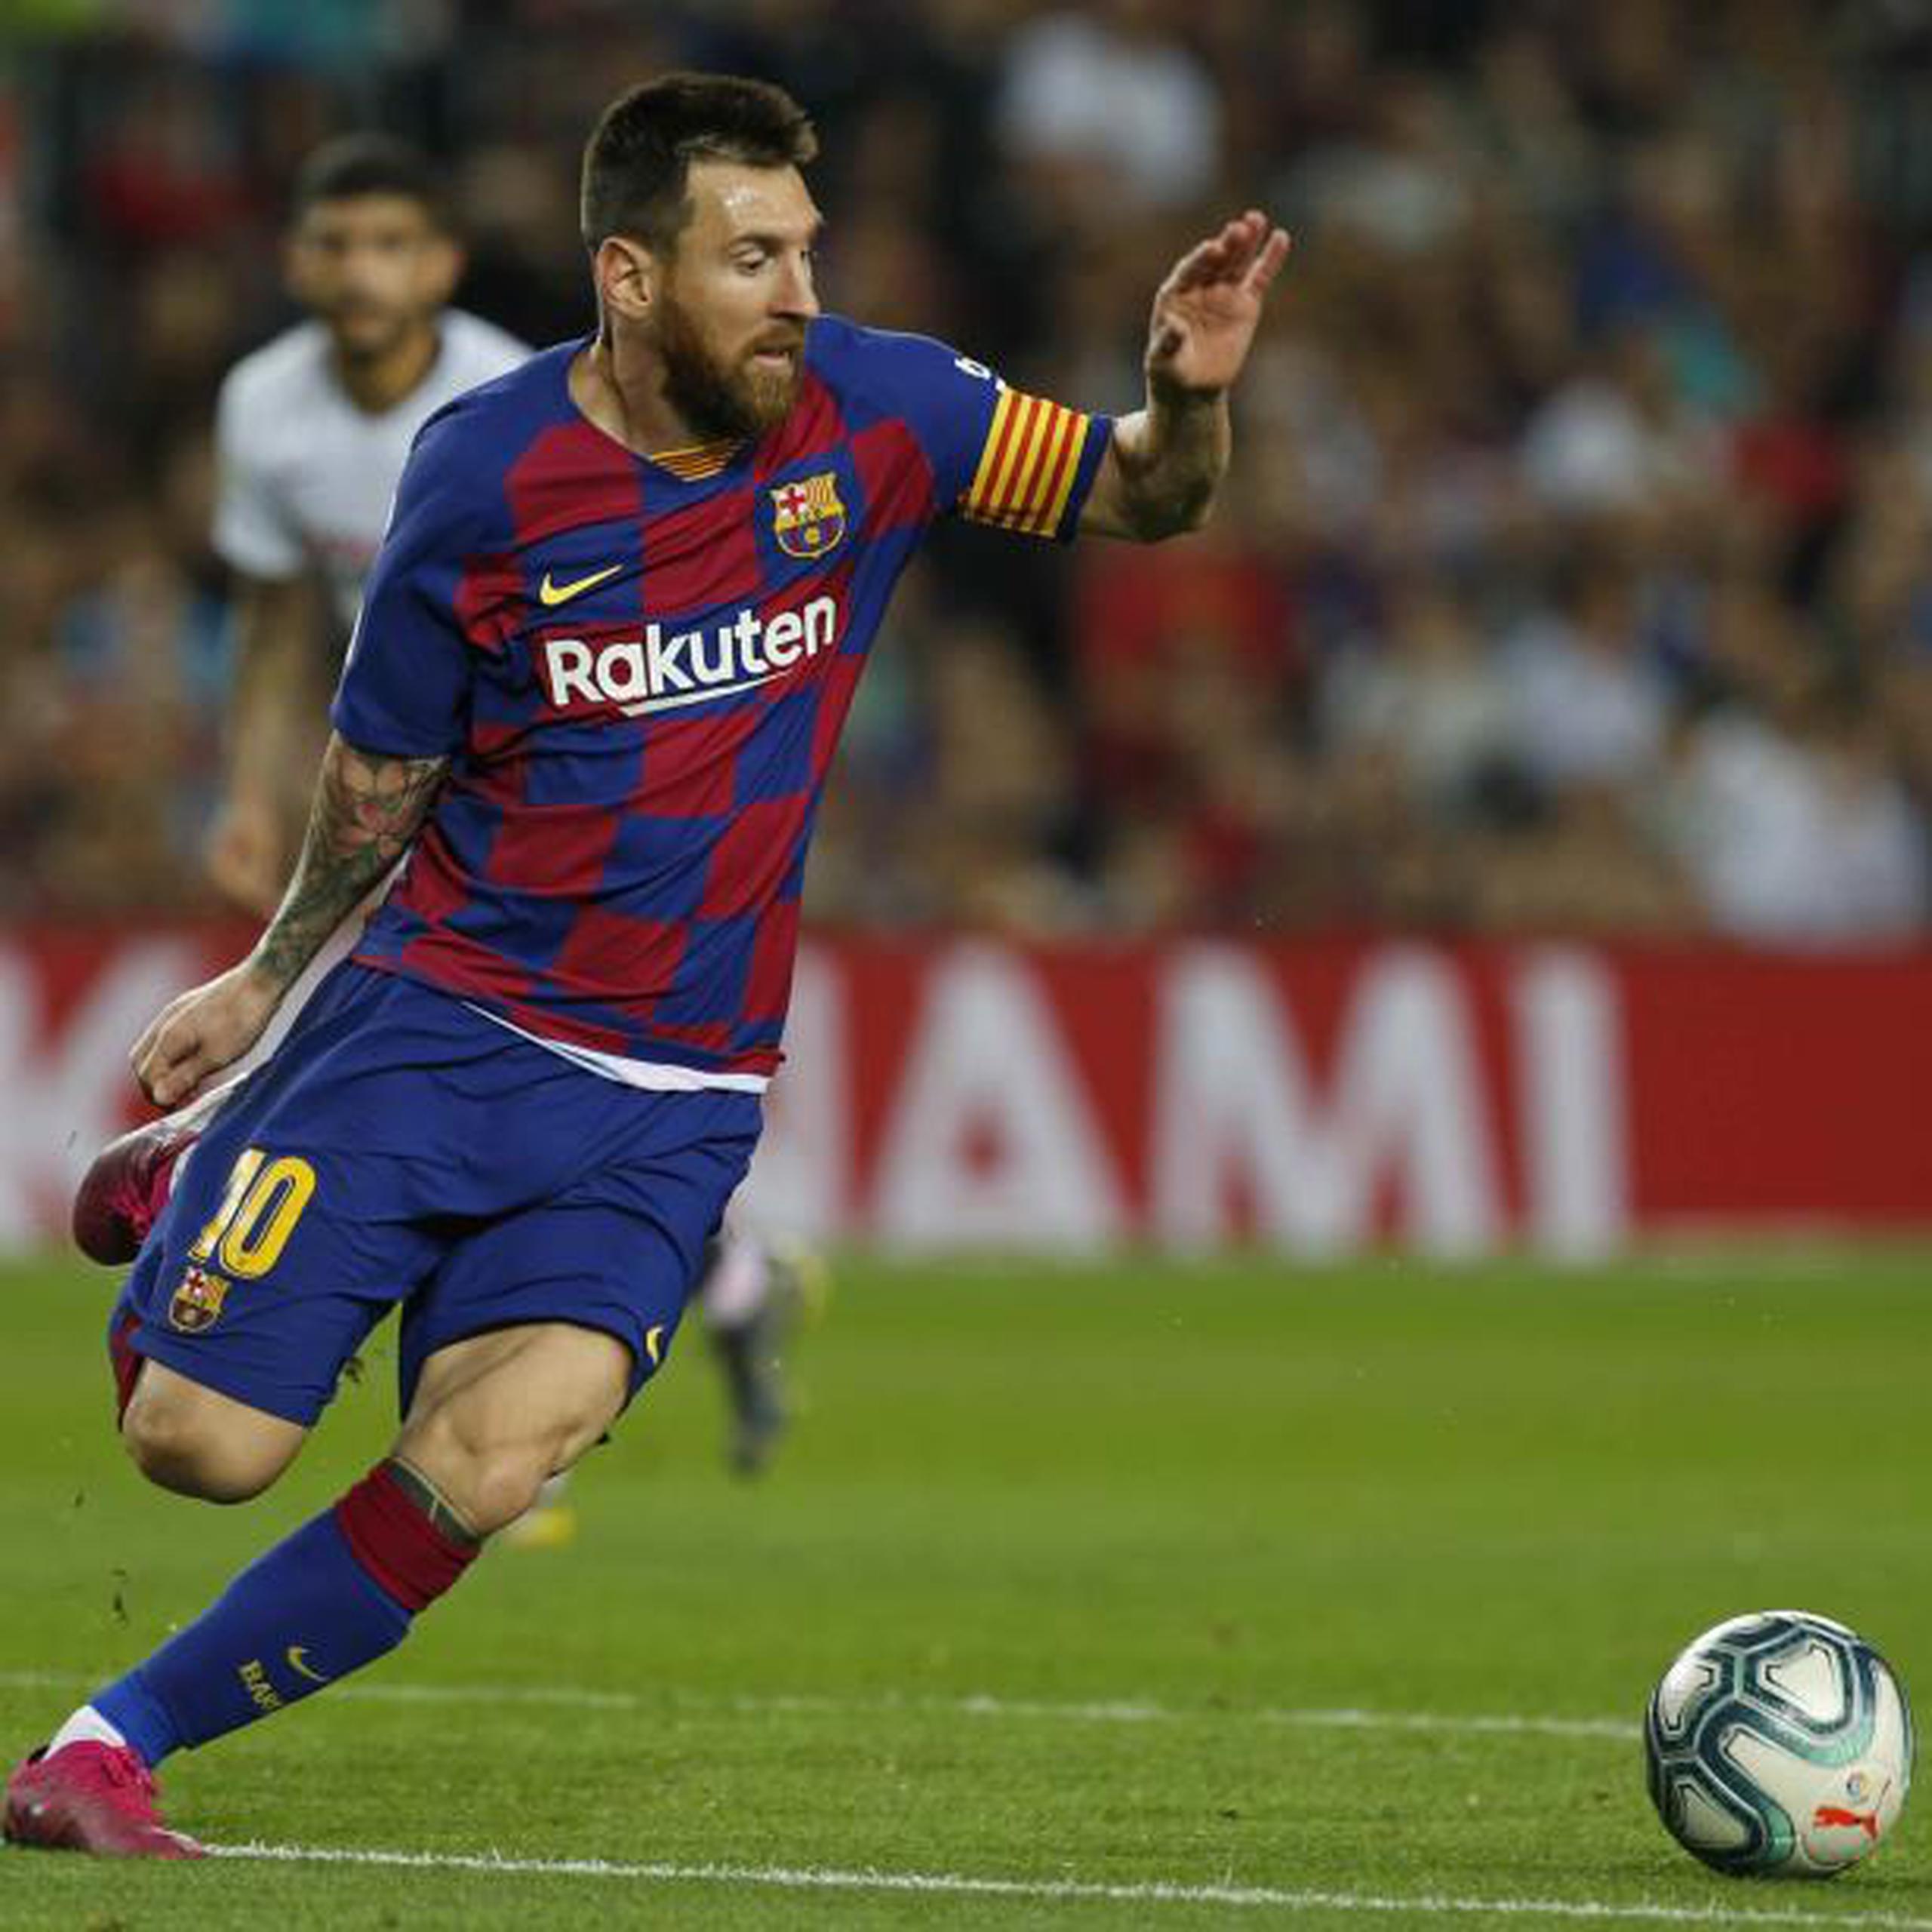 Para el argentino Messi, en España lo utilizaron como chivo expiatorio en asuntos fiscales contra deportistas. Ello le llevó a considerar abandonar al Barsa en algún momento. (AP)